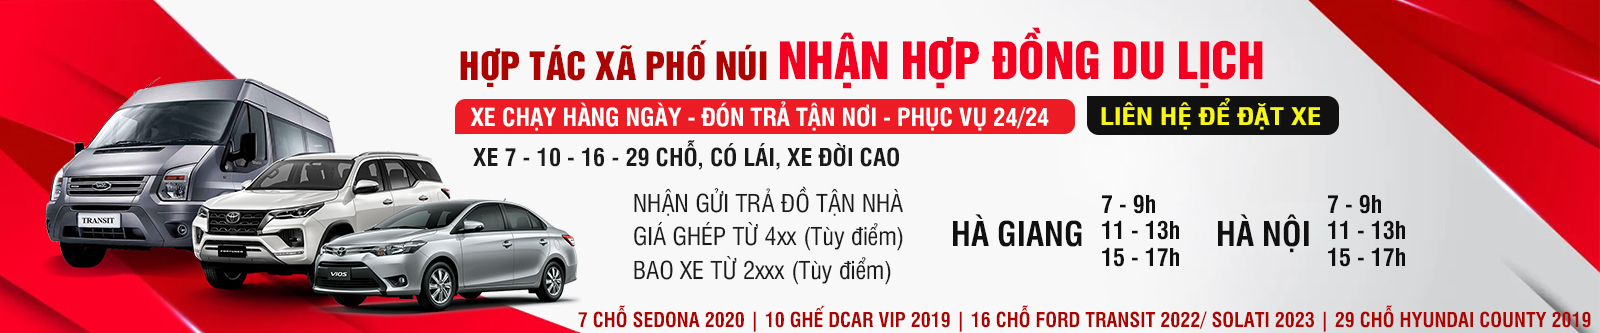 HTX Phố Núi tuyến Hà Giang - Hà Nội